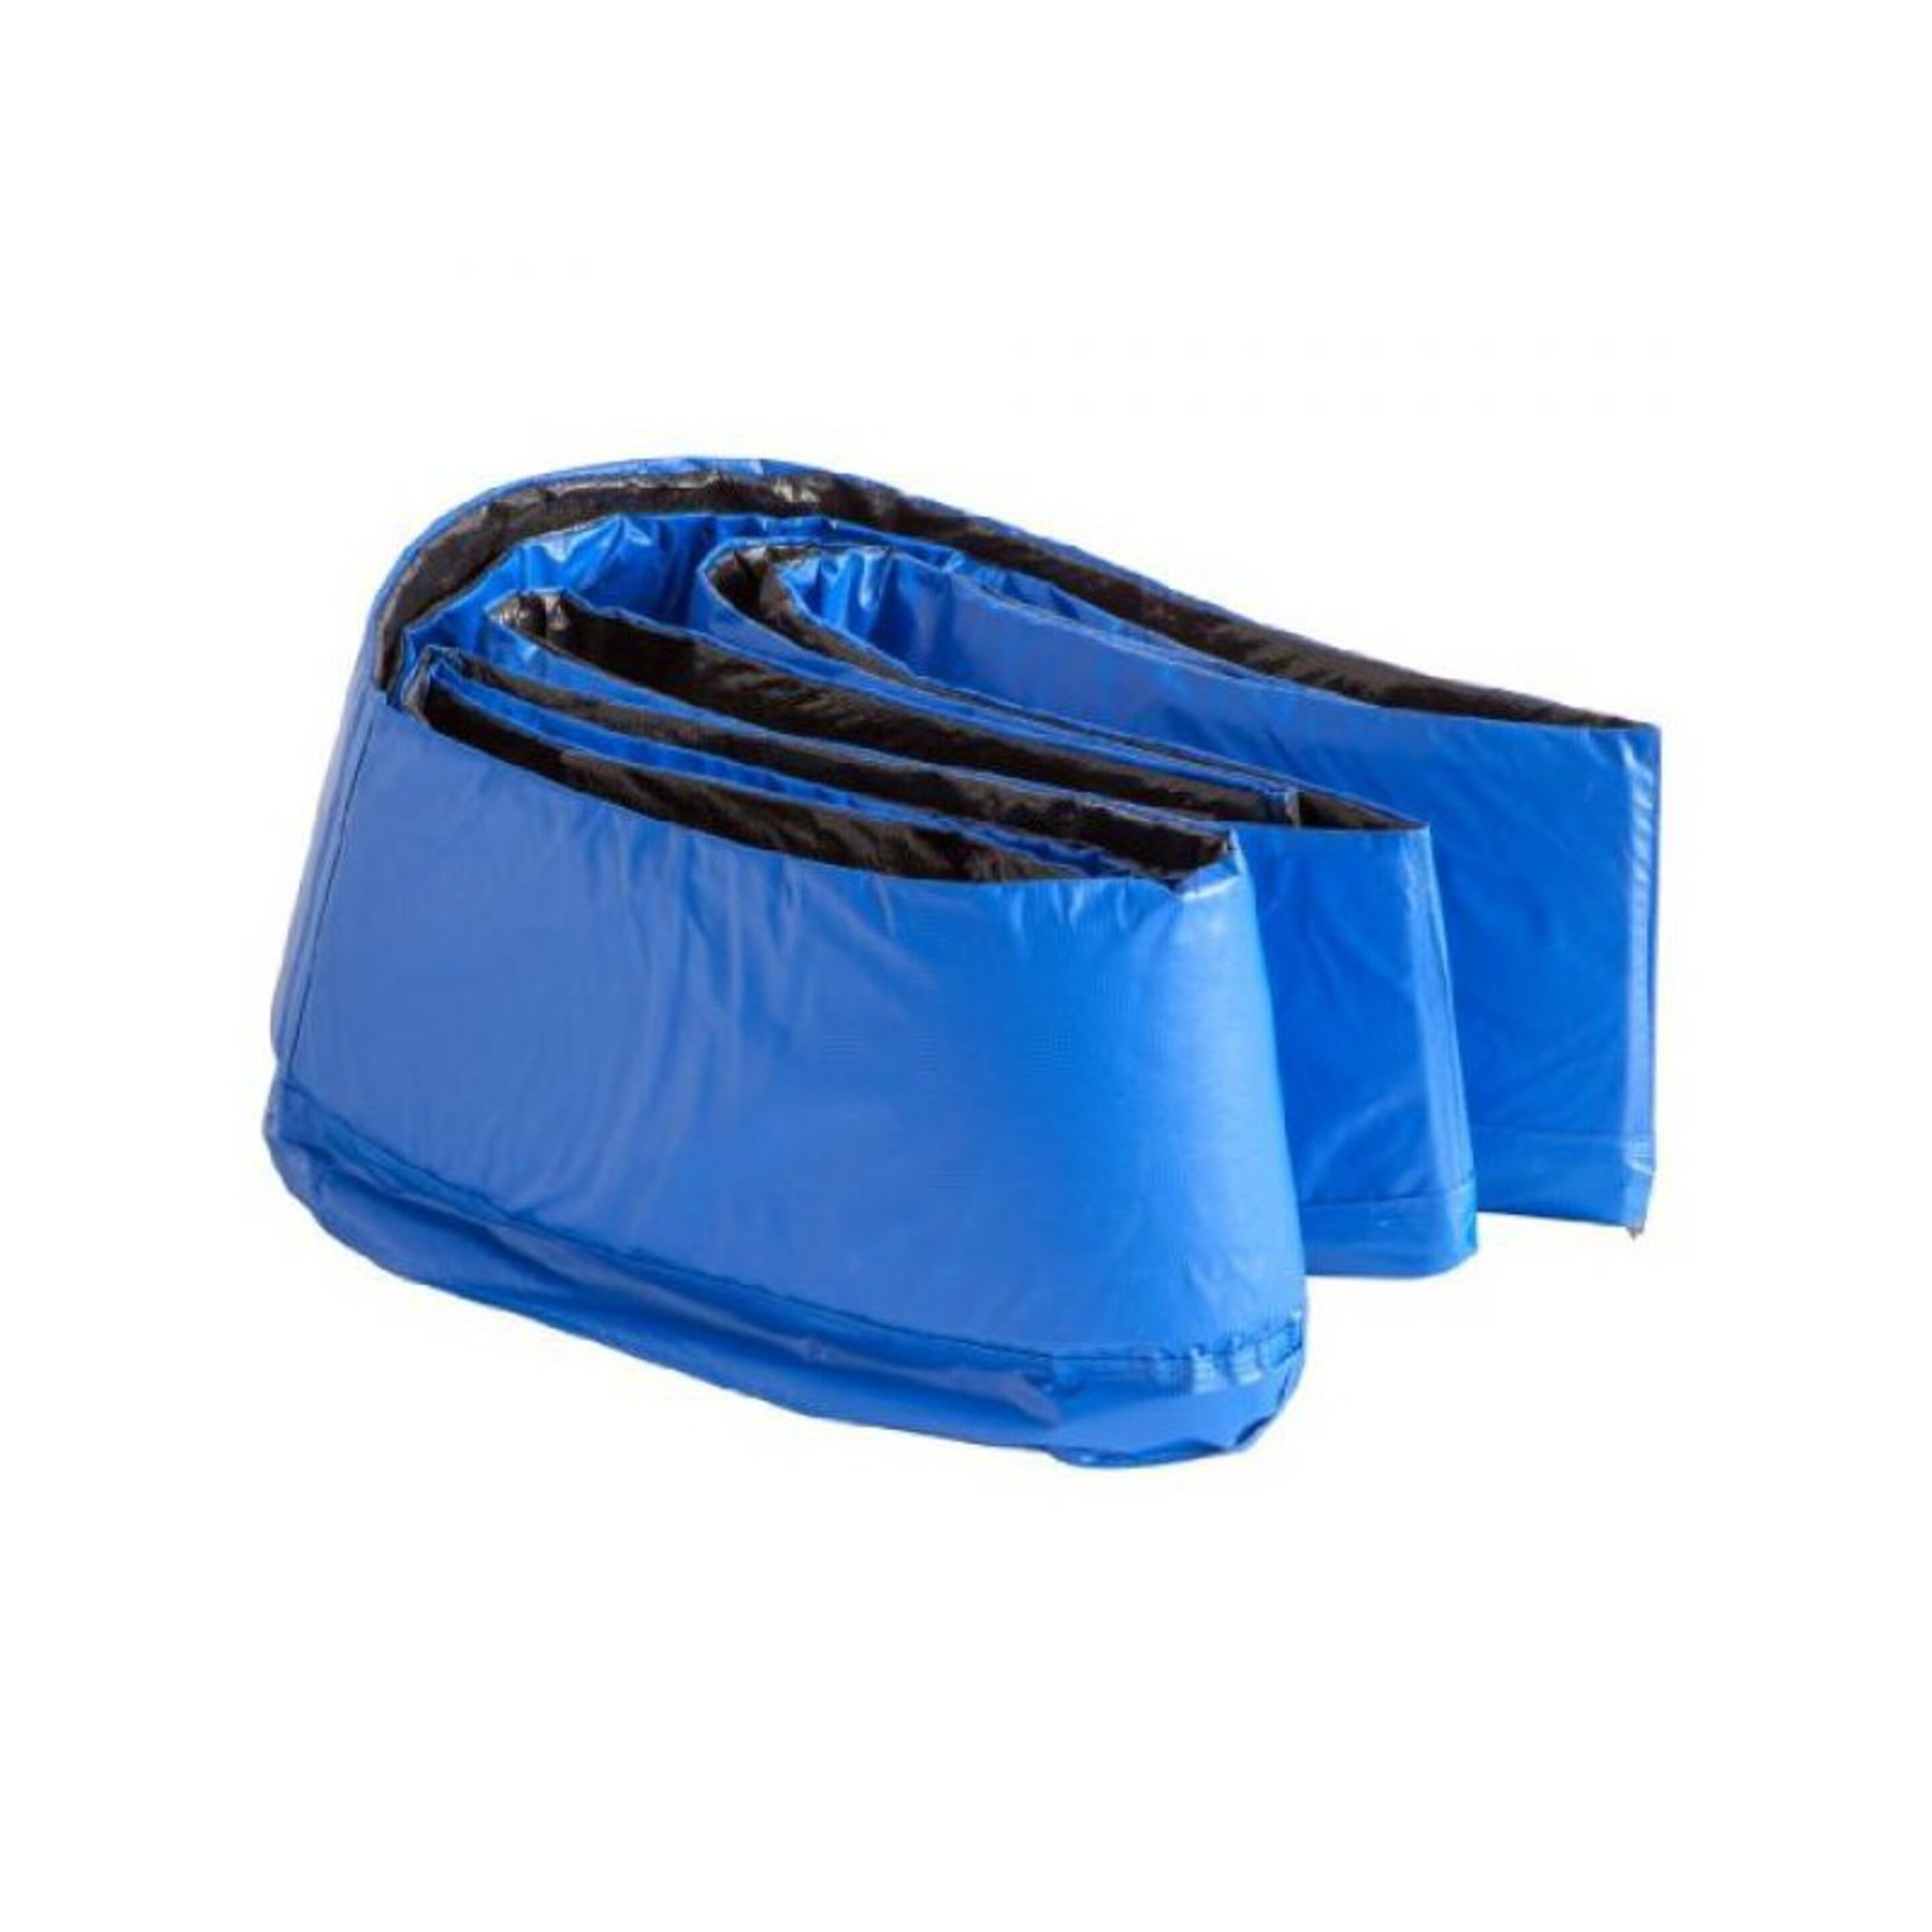 Protector Lateral De Muelles Para Cama Elástica (Para Cama - 10x15ft - 4.57x3.05m) - negro-azul - 